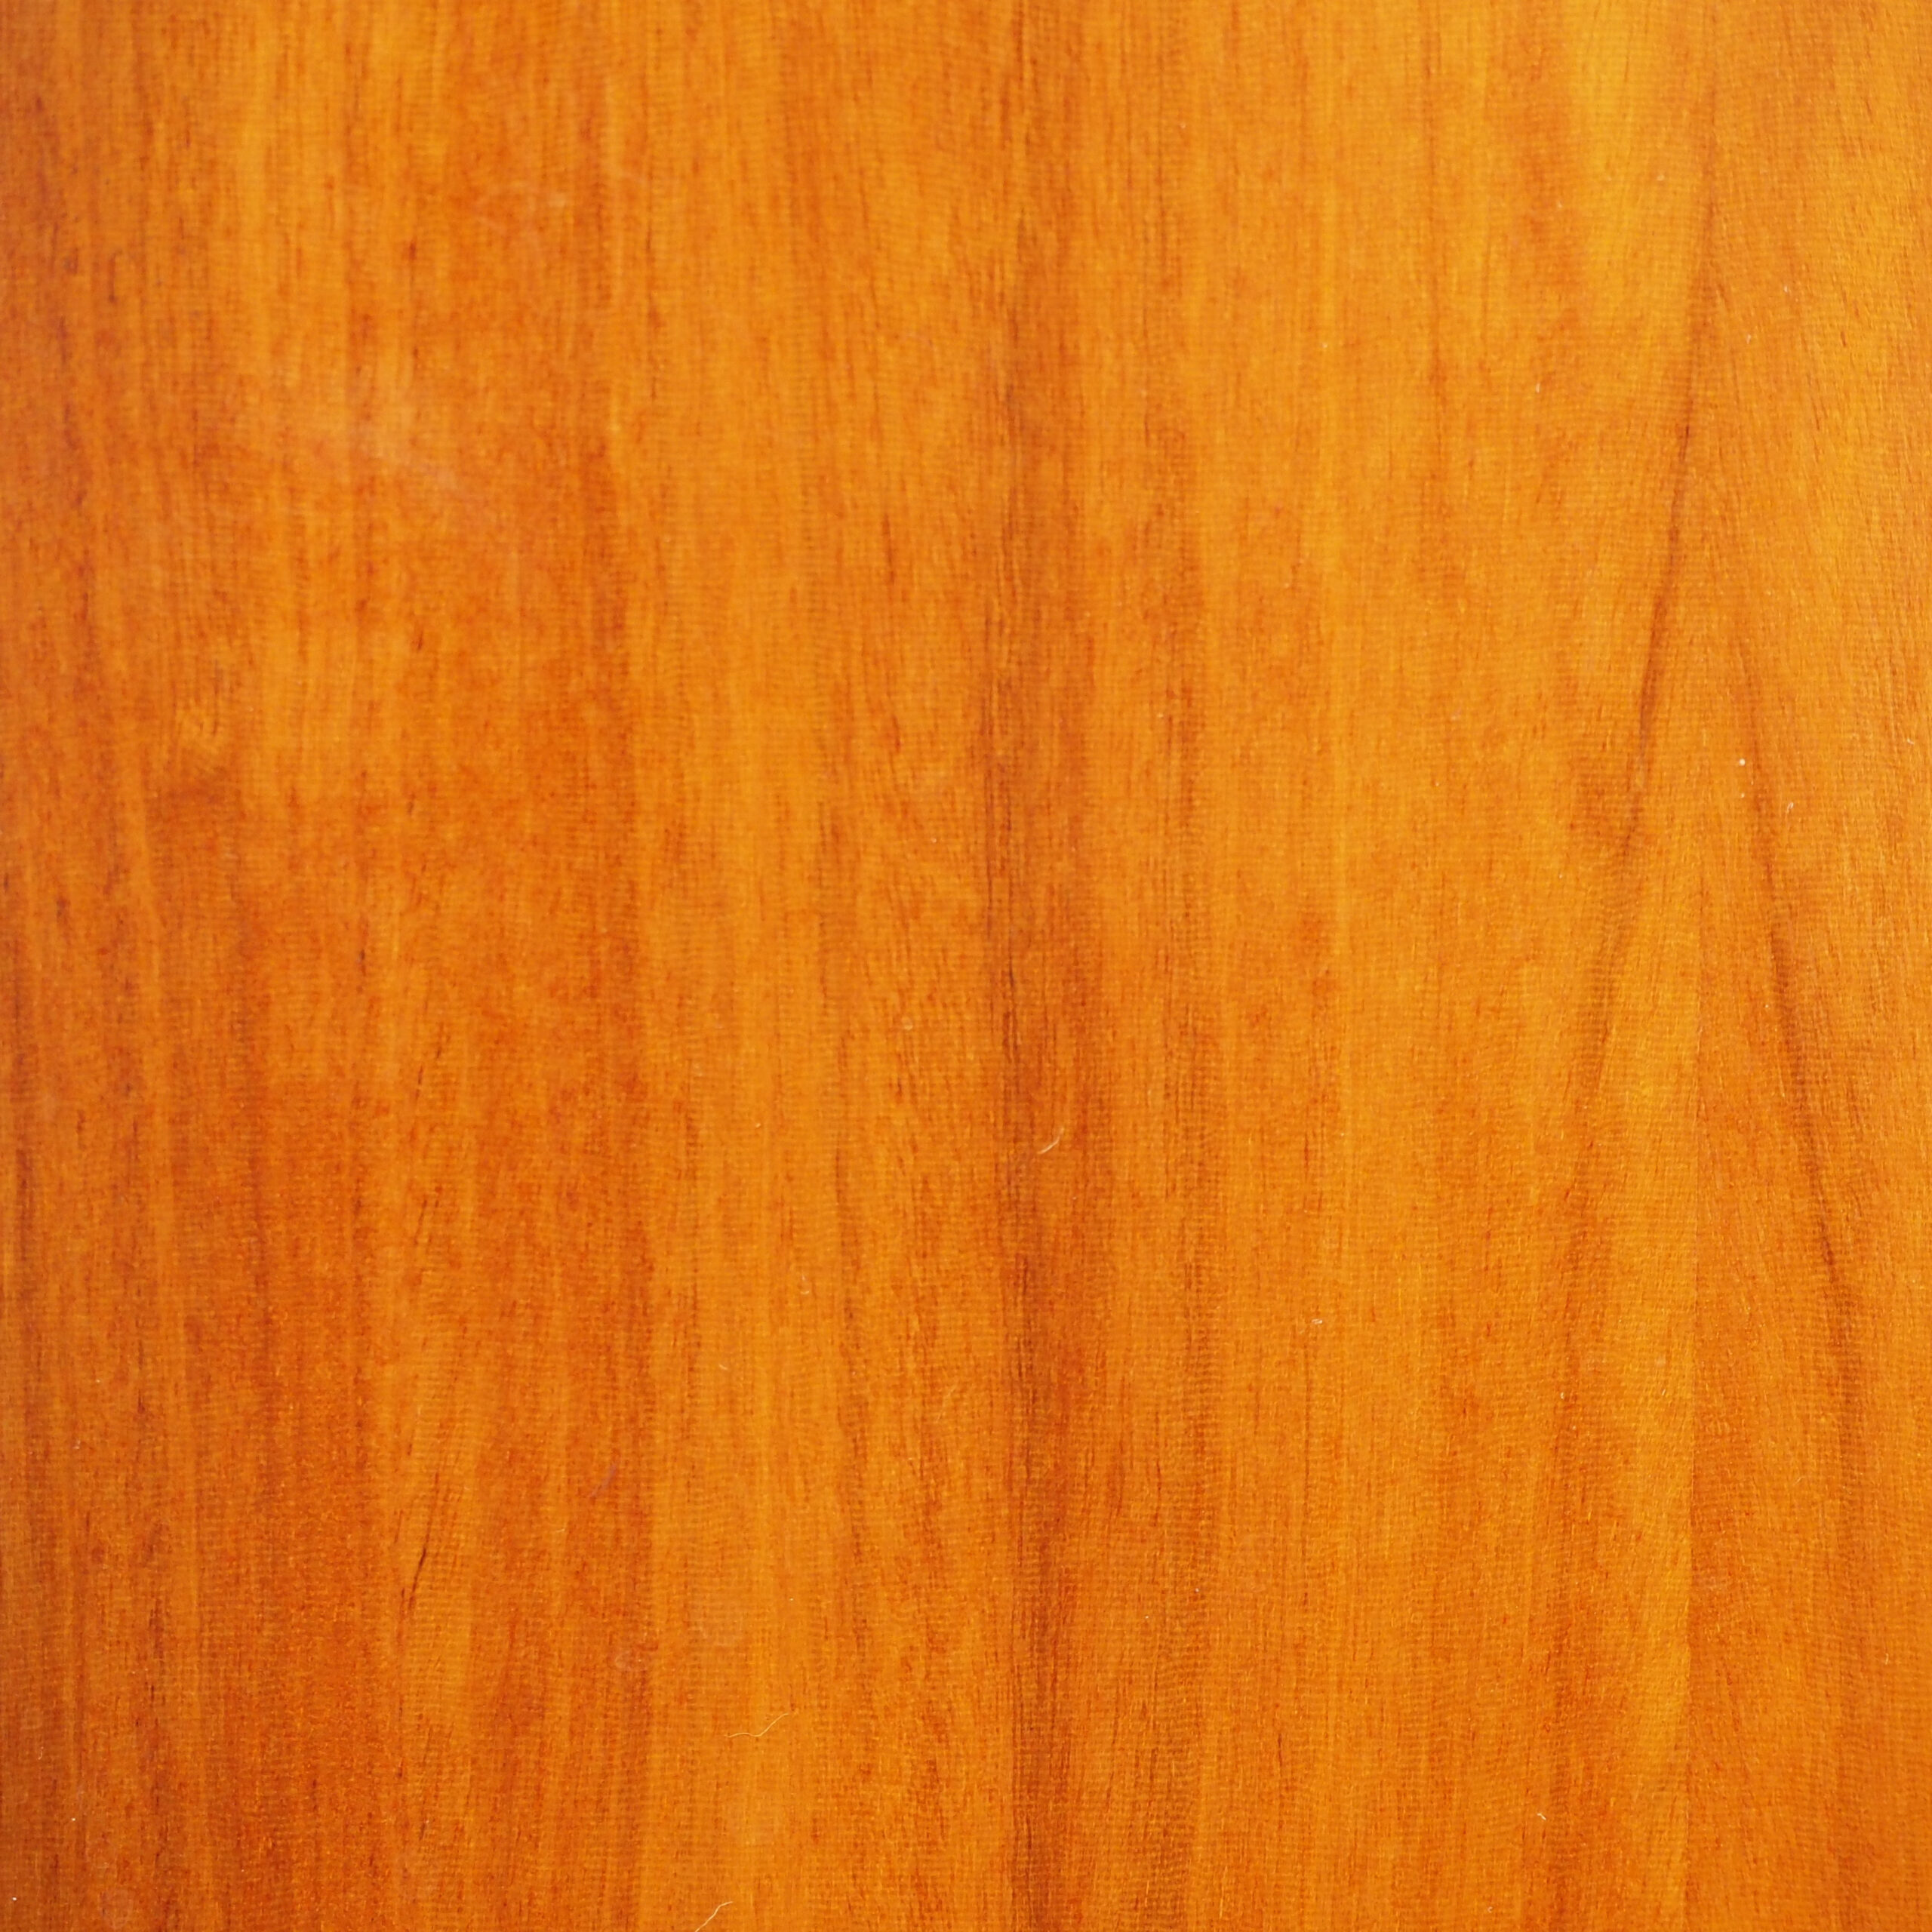 Varnished wooden door (H. 198.4 x W. 58 cm) – Left